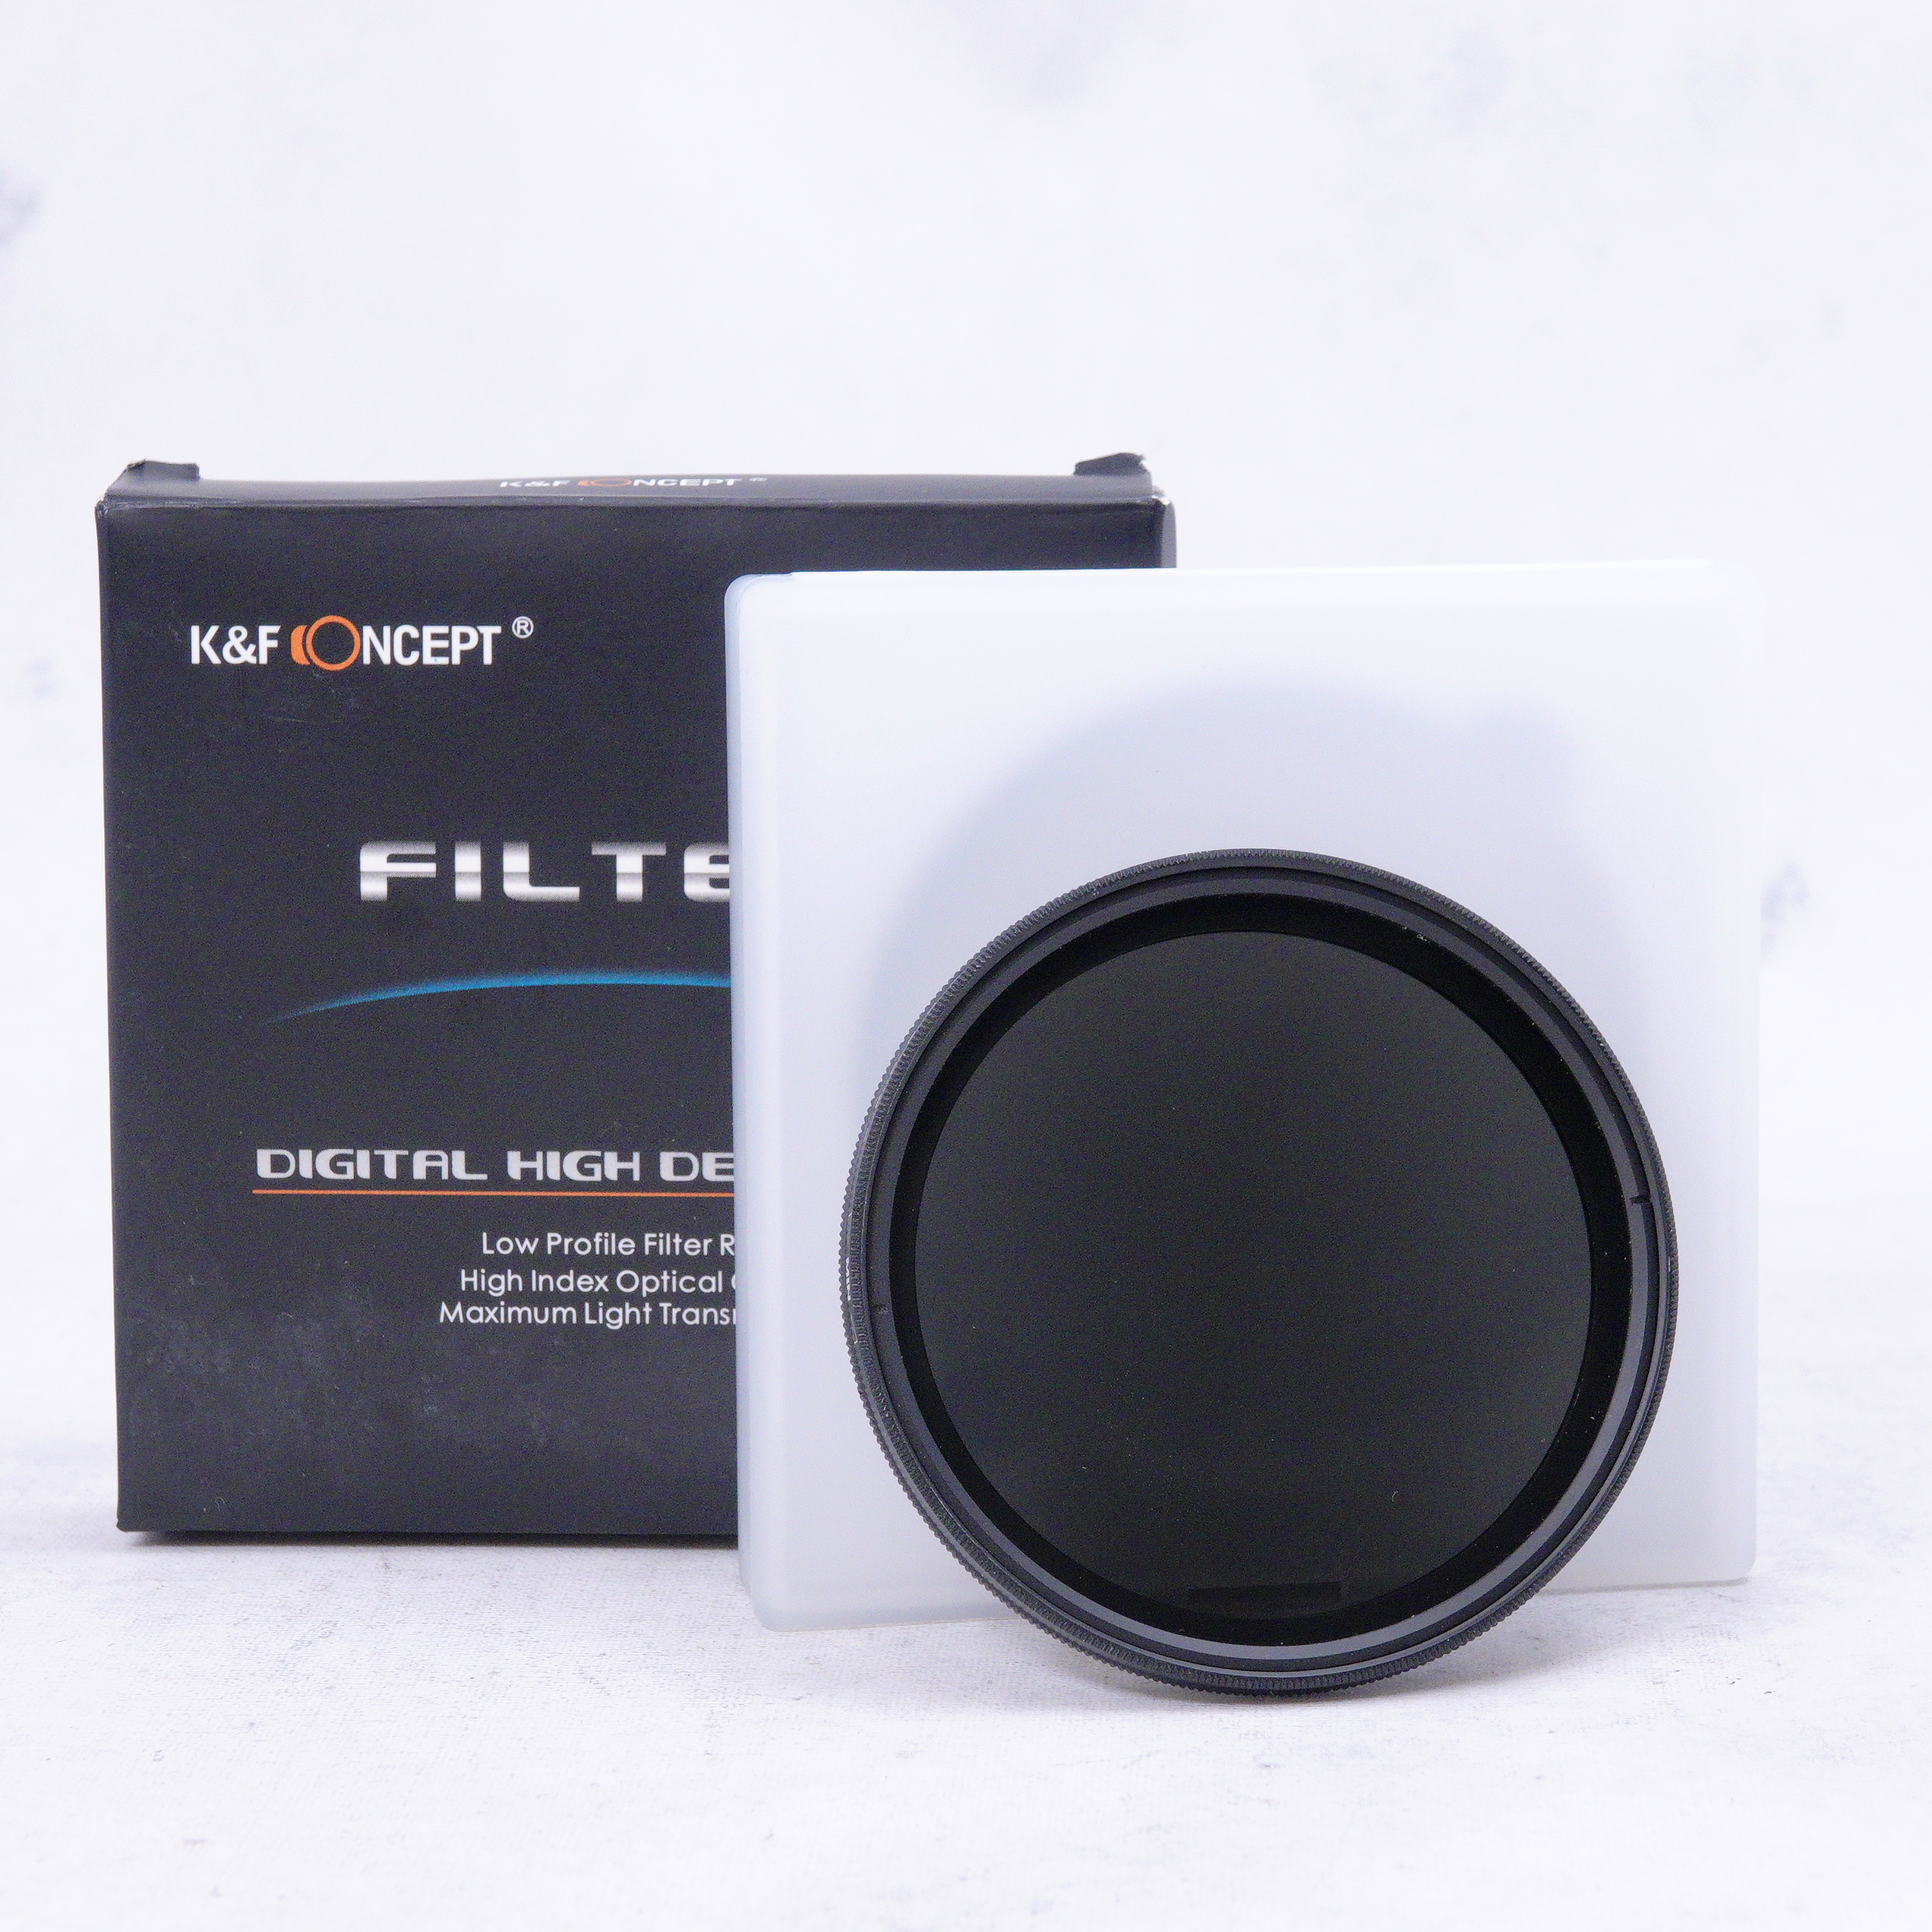 K&F Concept filtro de densidad neutra 67mm - Usado